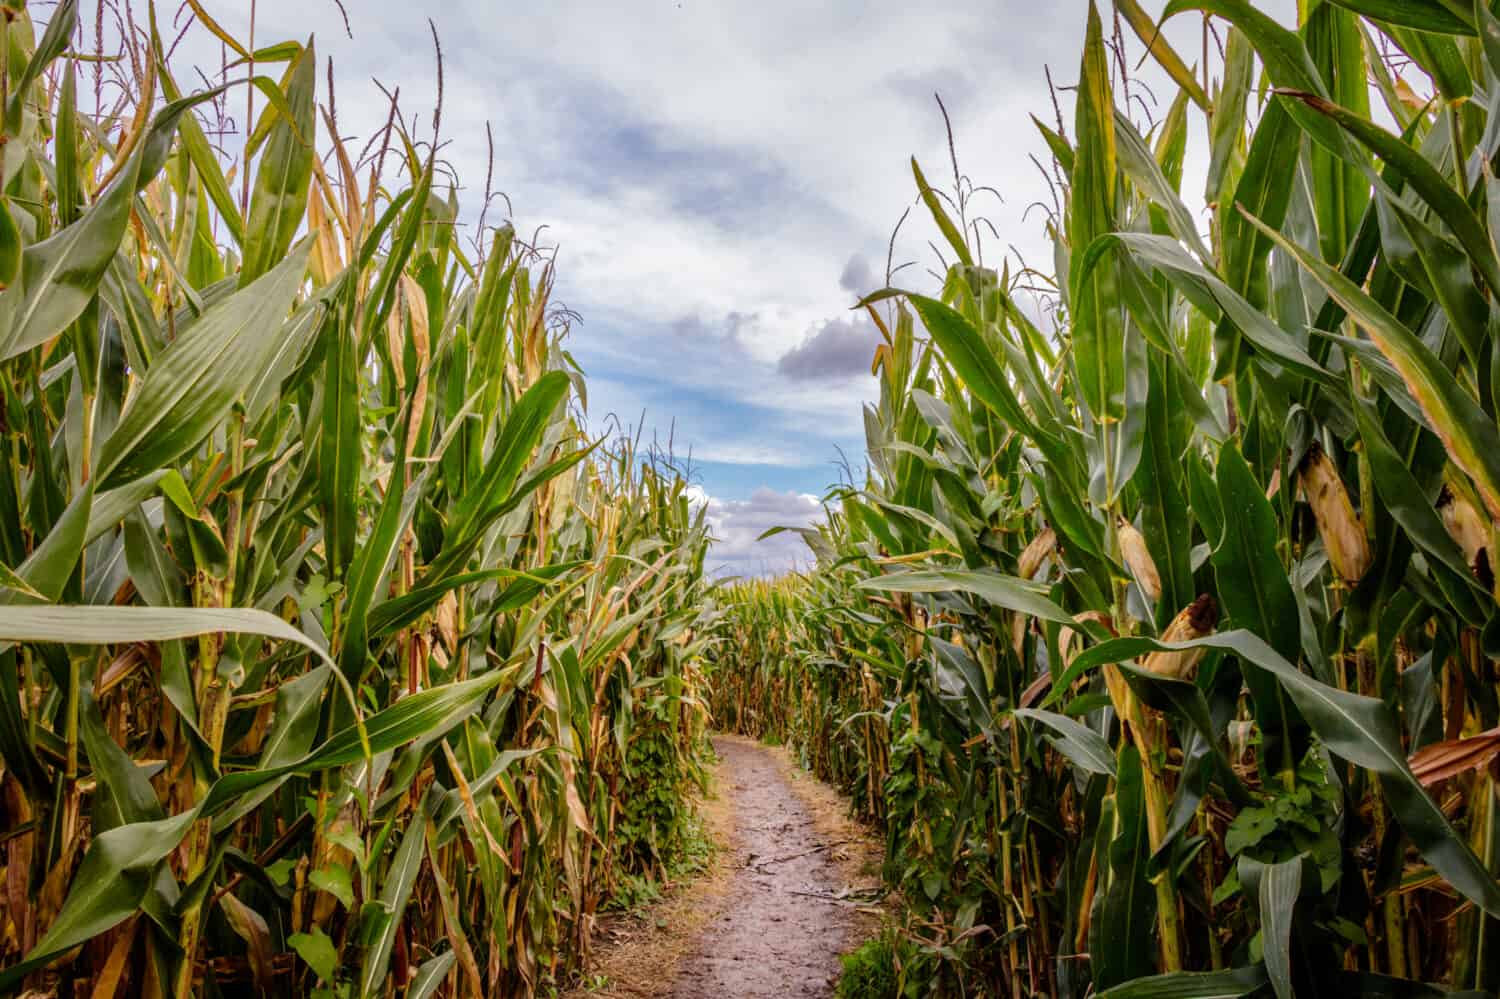 Un labirinto di mais o labirinto di mais è un labirinto ritagliato da un campo di mais.  Il primo labirinto di mais era ad Annville, in Pennsylvania.  I labirinti di mais sono diventati popolari attrazioni turistiche del Nord America.